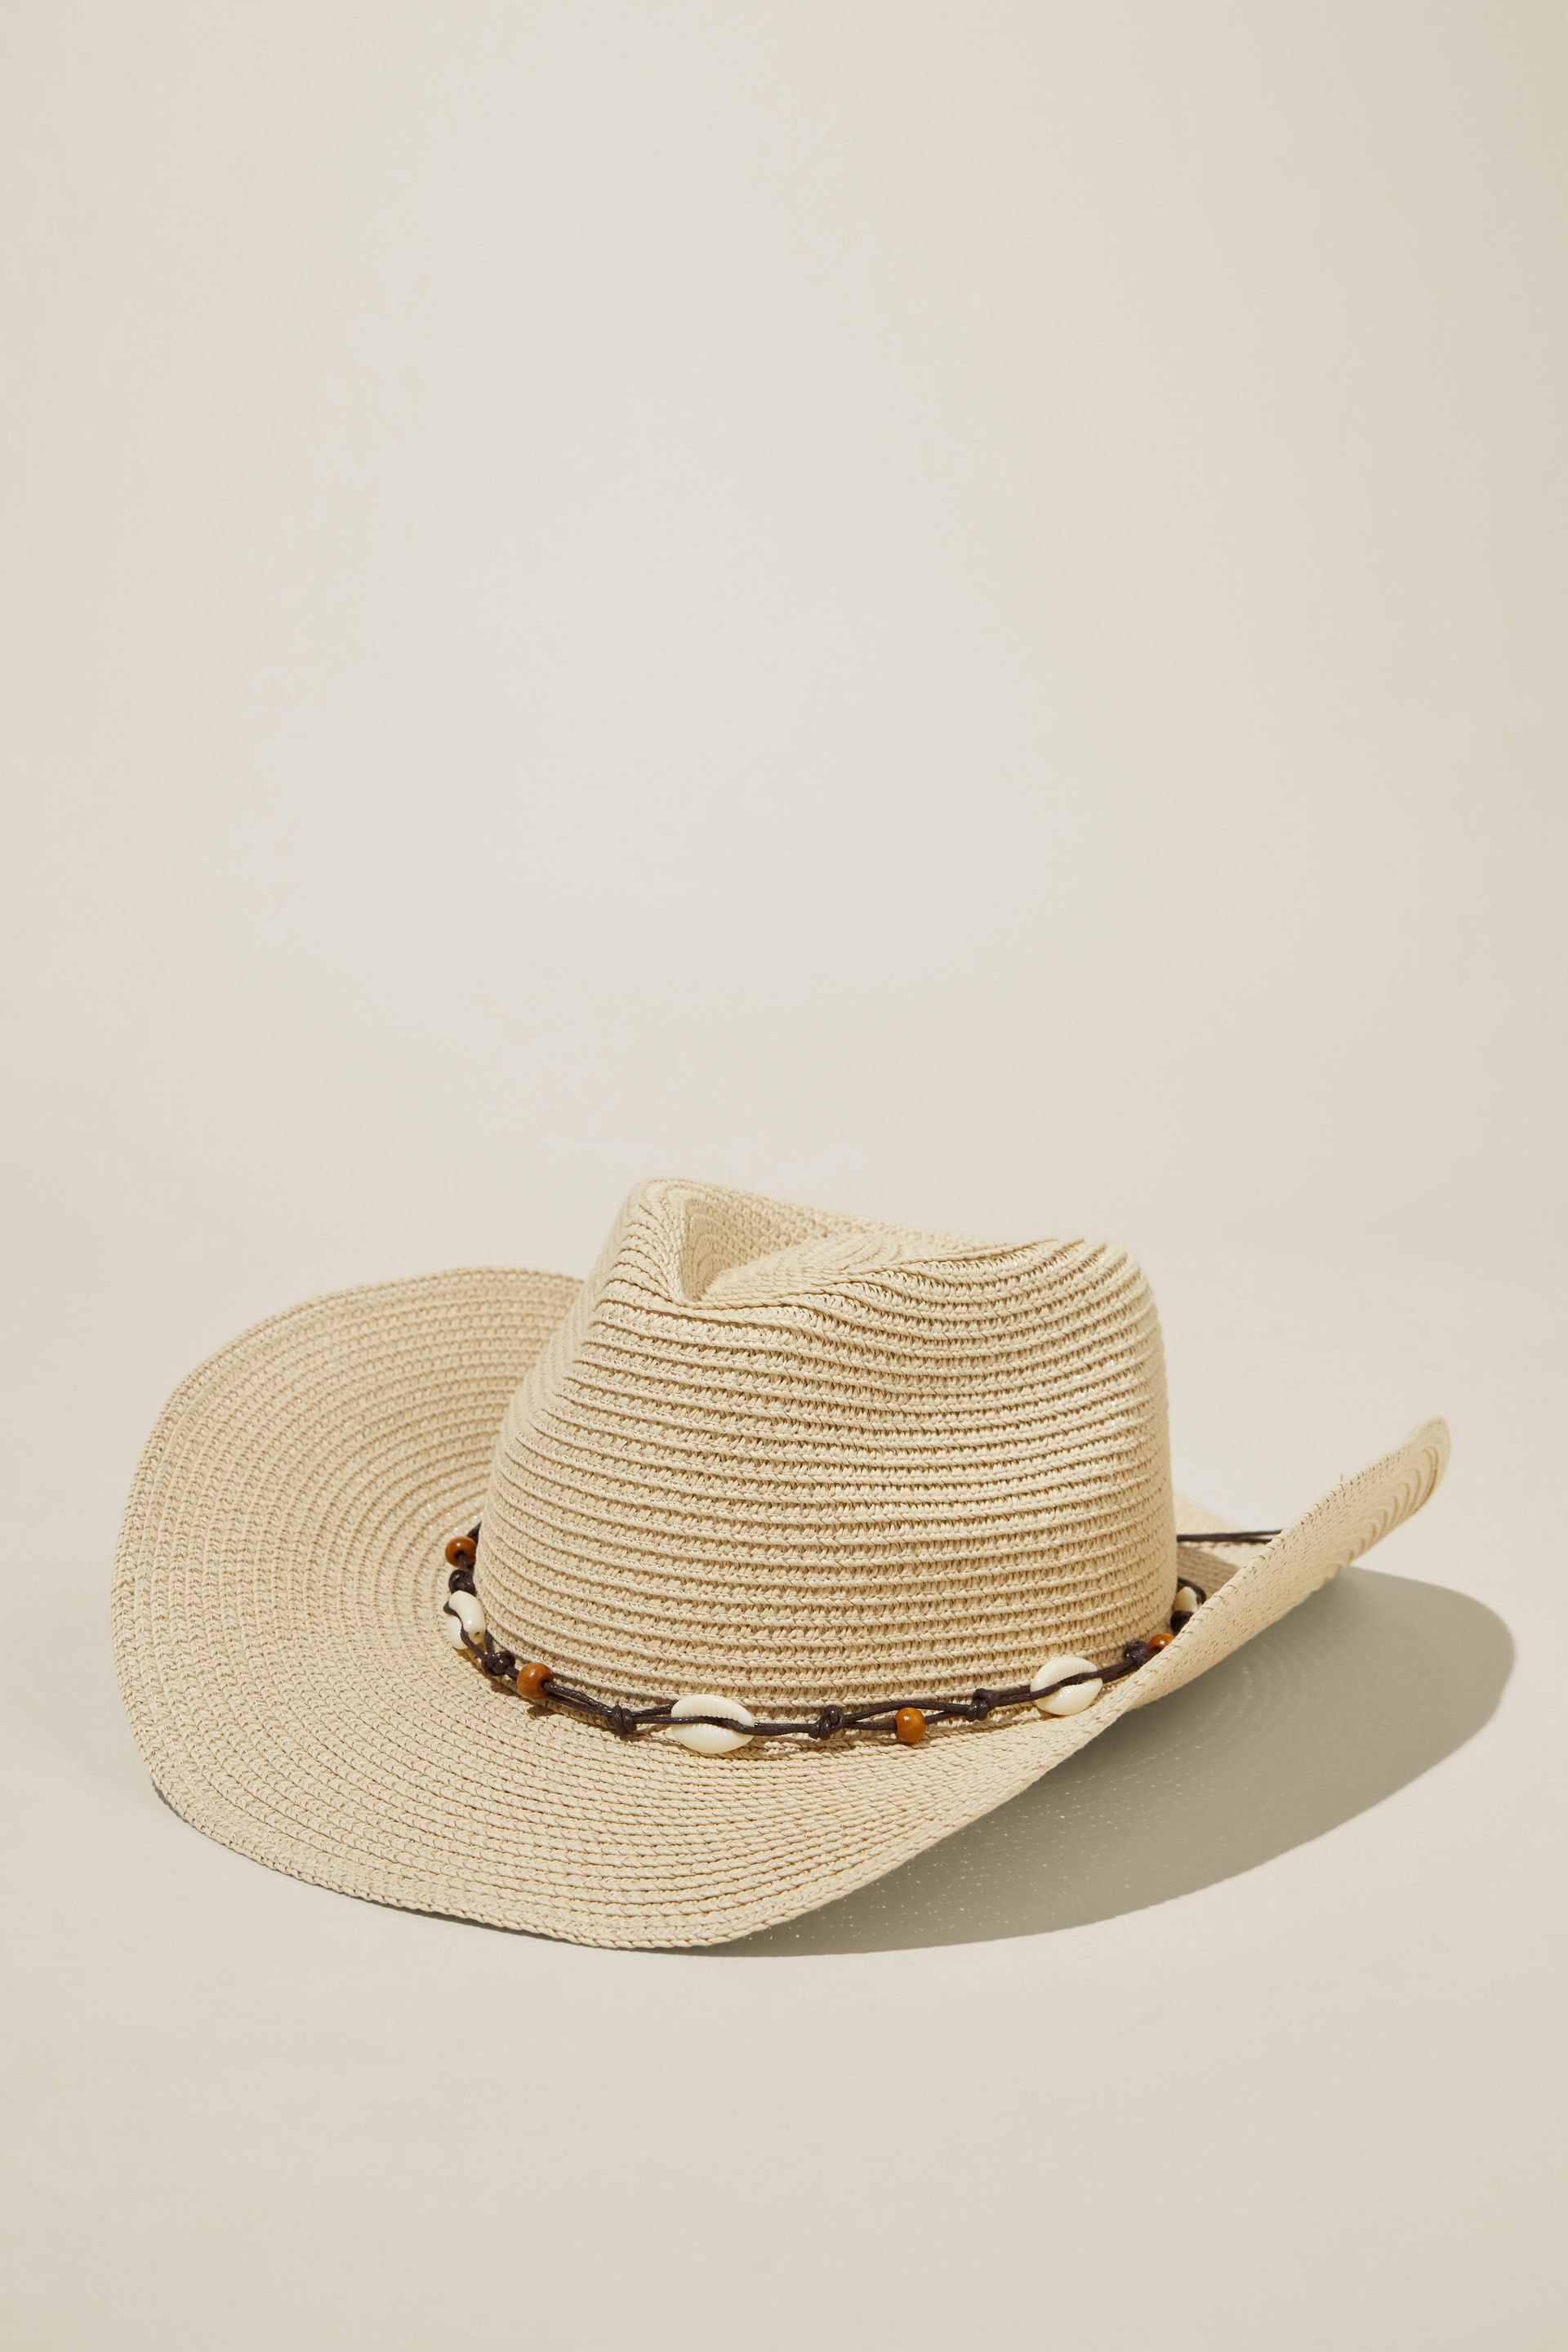 Rubi - Marley Cowboy Hat - Natural/shells